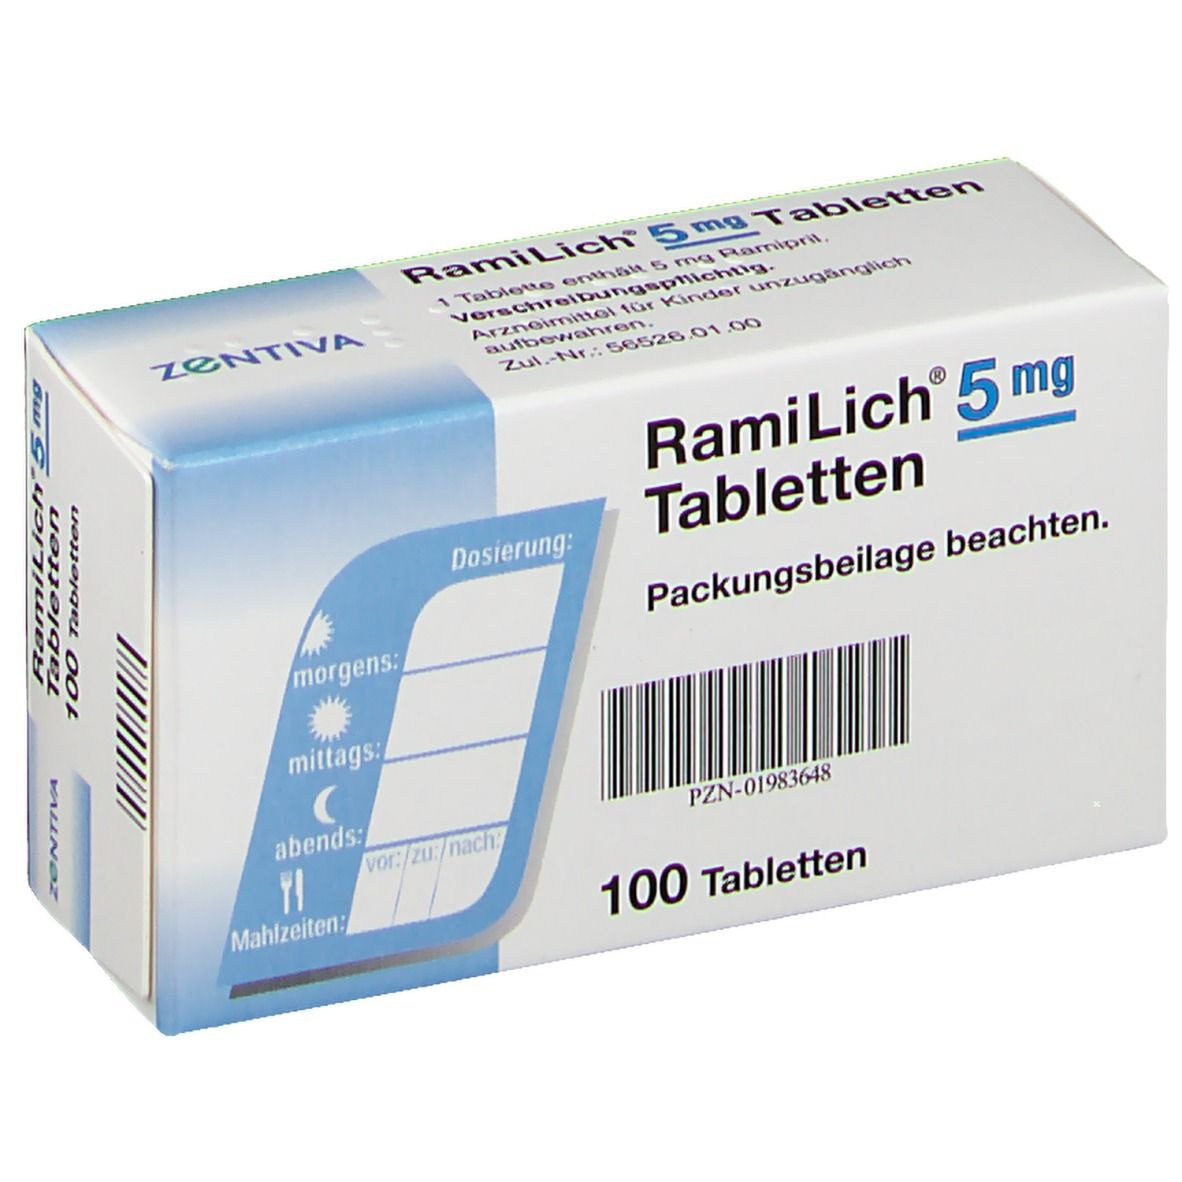 RamiLich® 5 mg